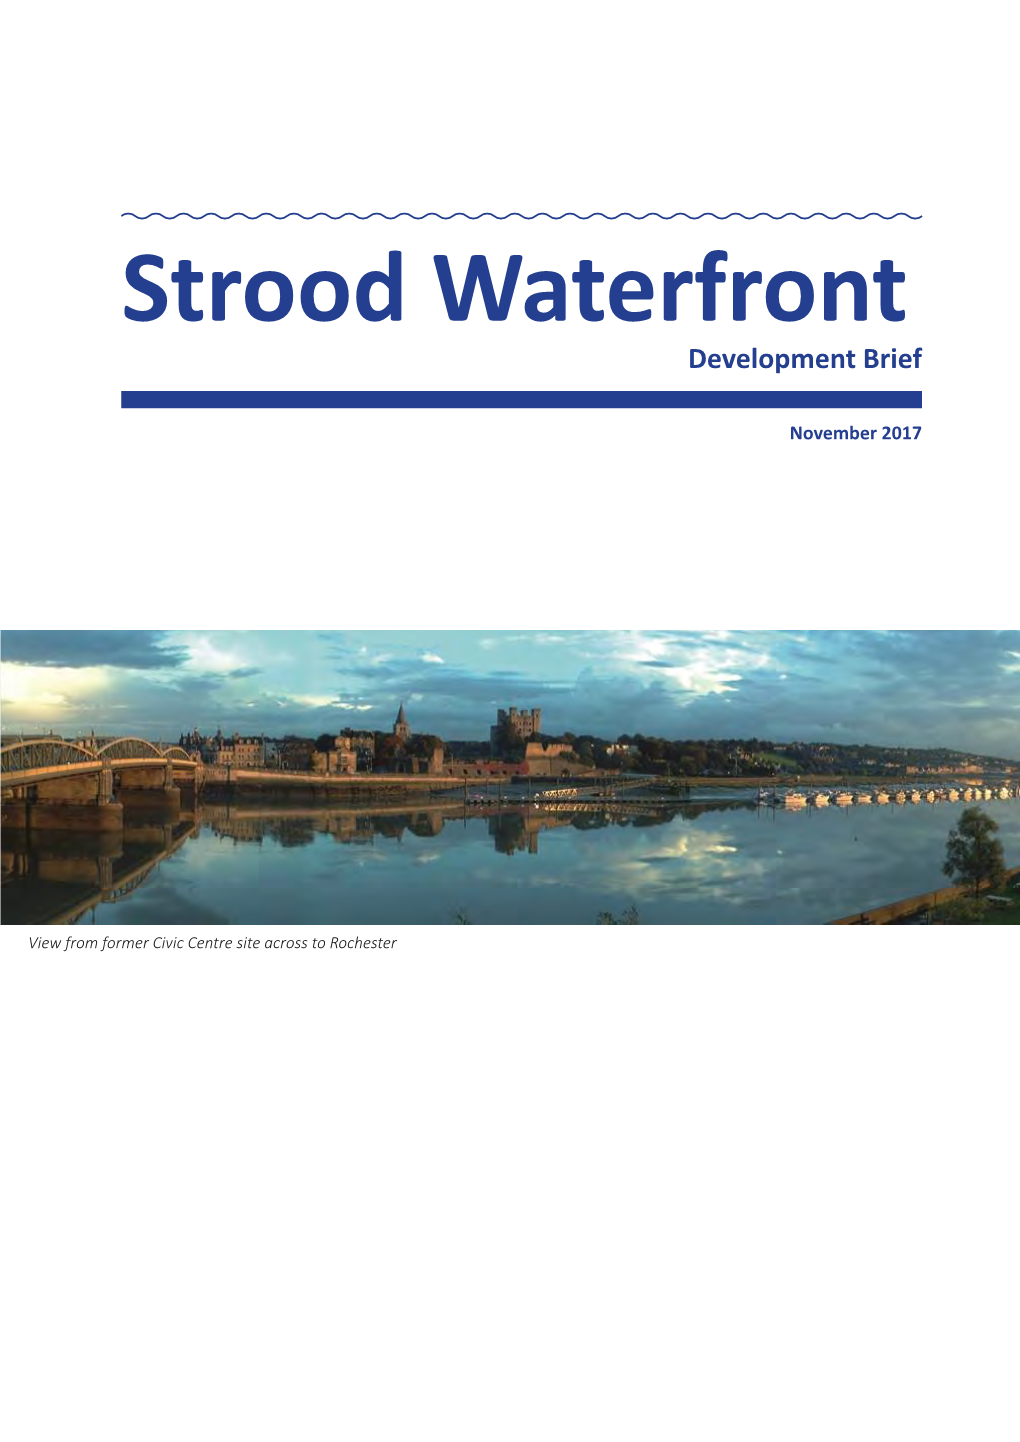 Download Strood Waterfront Development Brief 2017